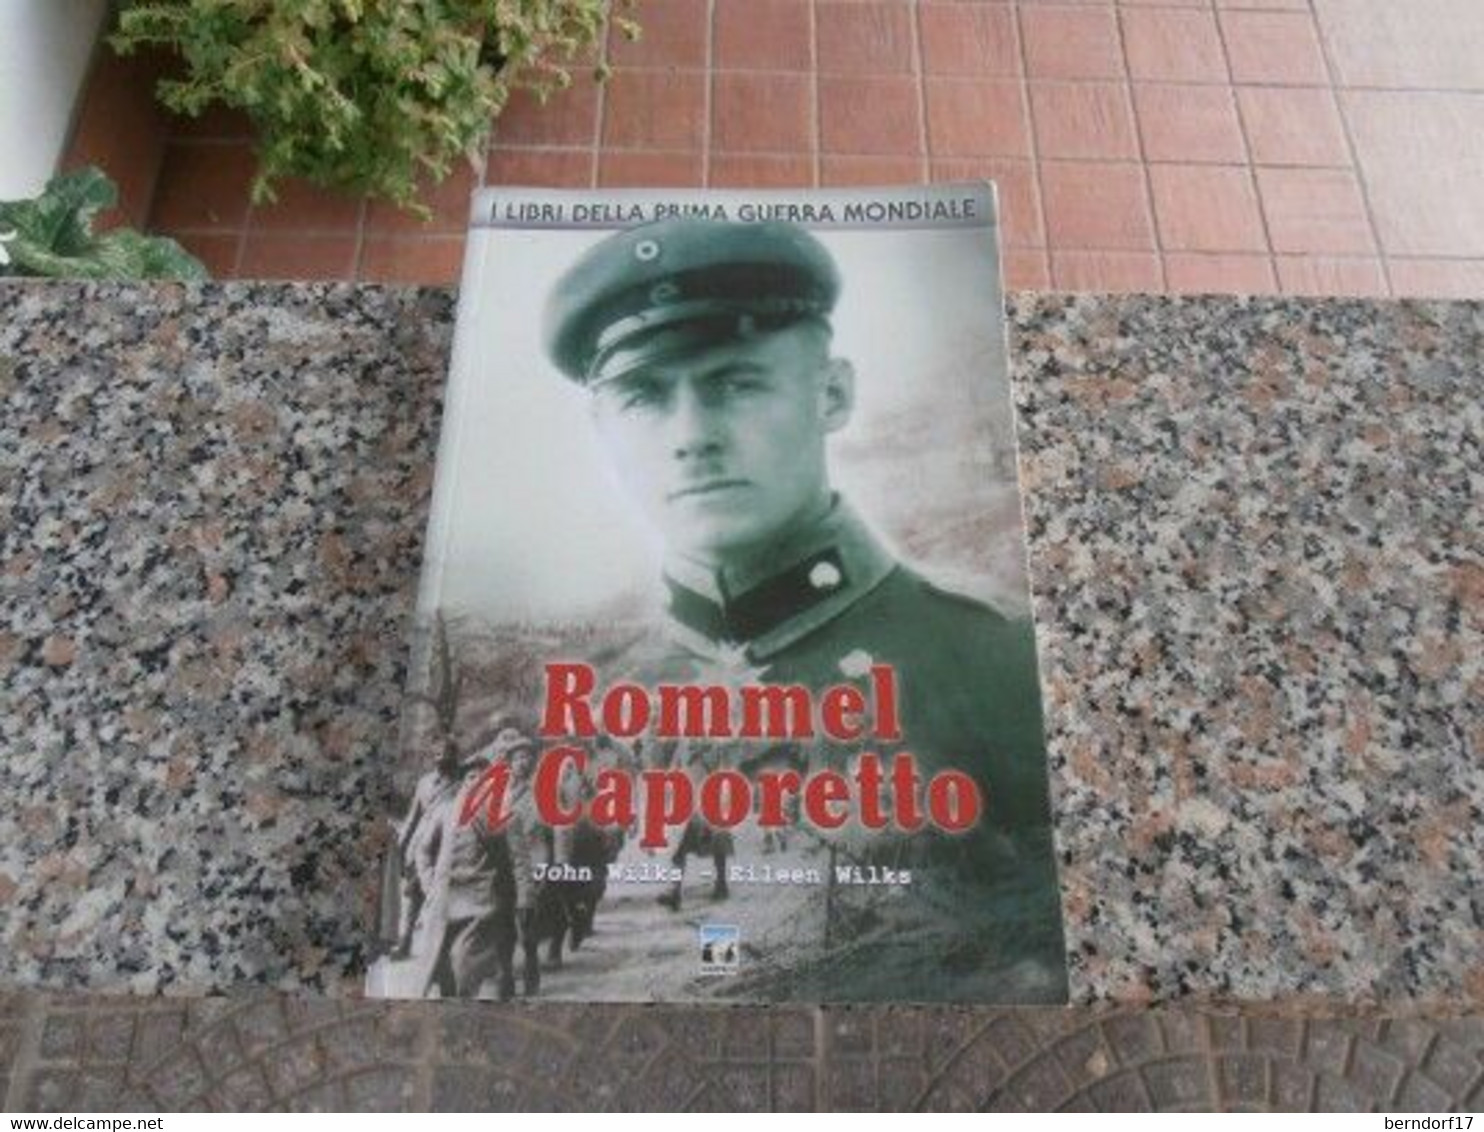 Rommel A Caporetto - John Wilks - Eileen Wilks - History